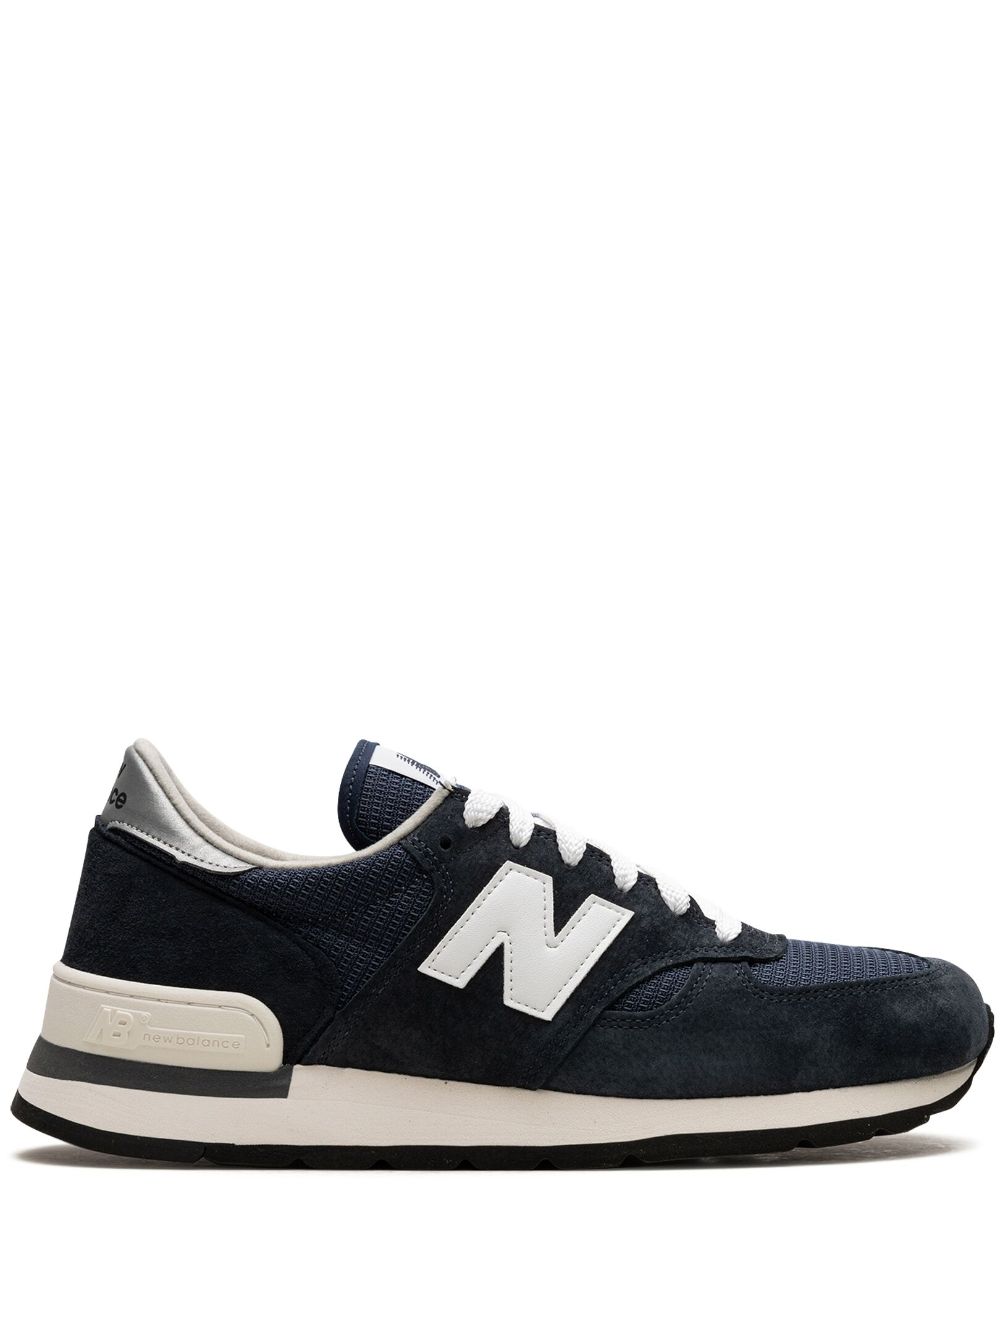 New Balance 990 v1 "Navy/White" sneakers - Blue